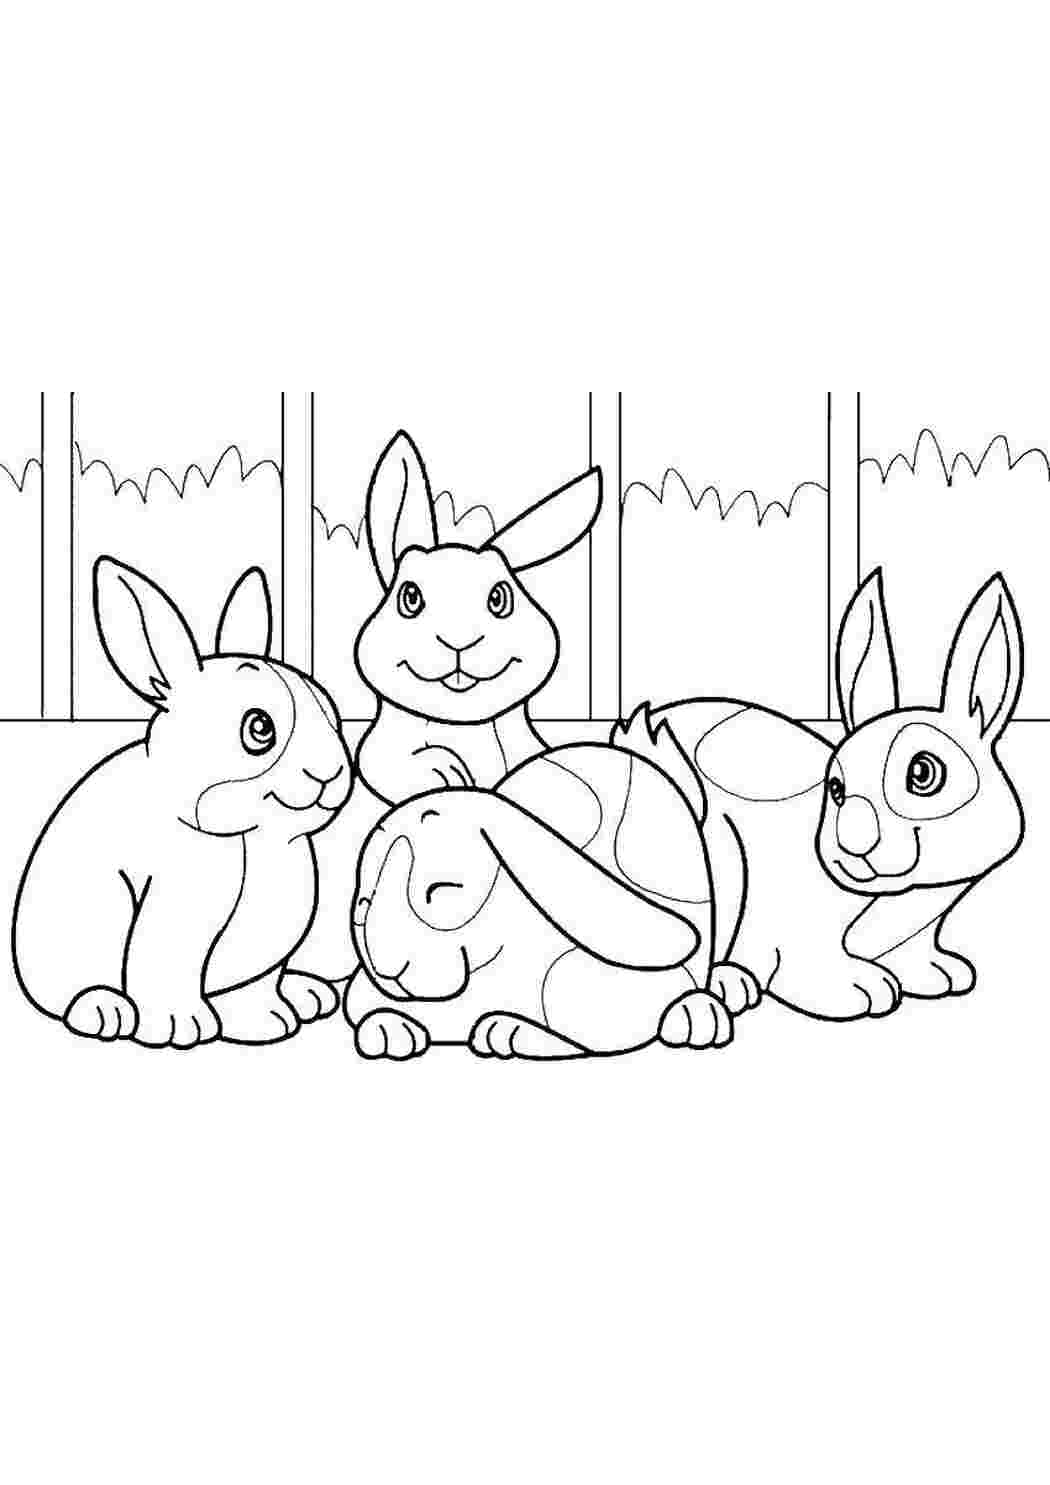 Кролик — раскраска для детей. Распечатать бесплатно.